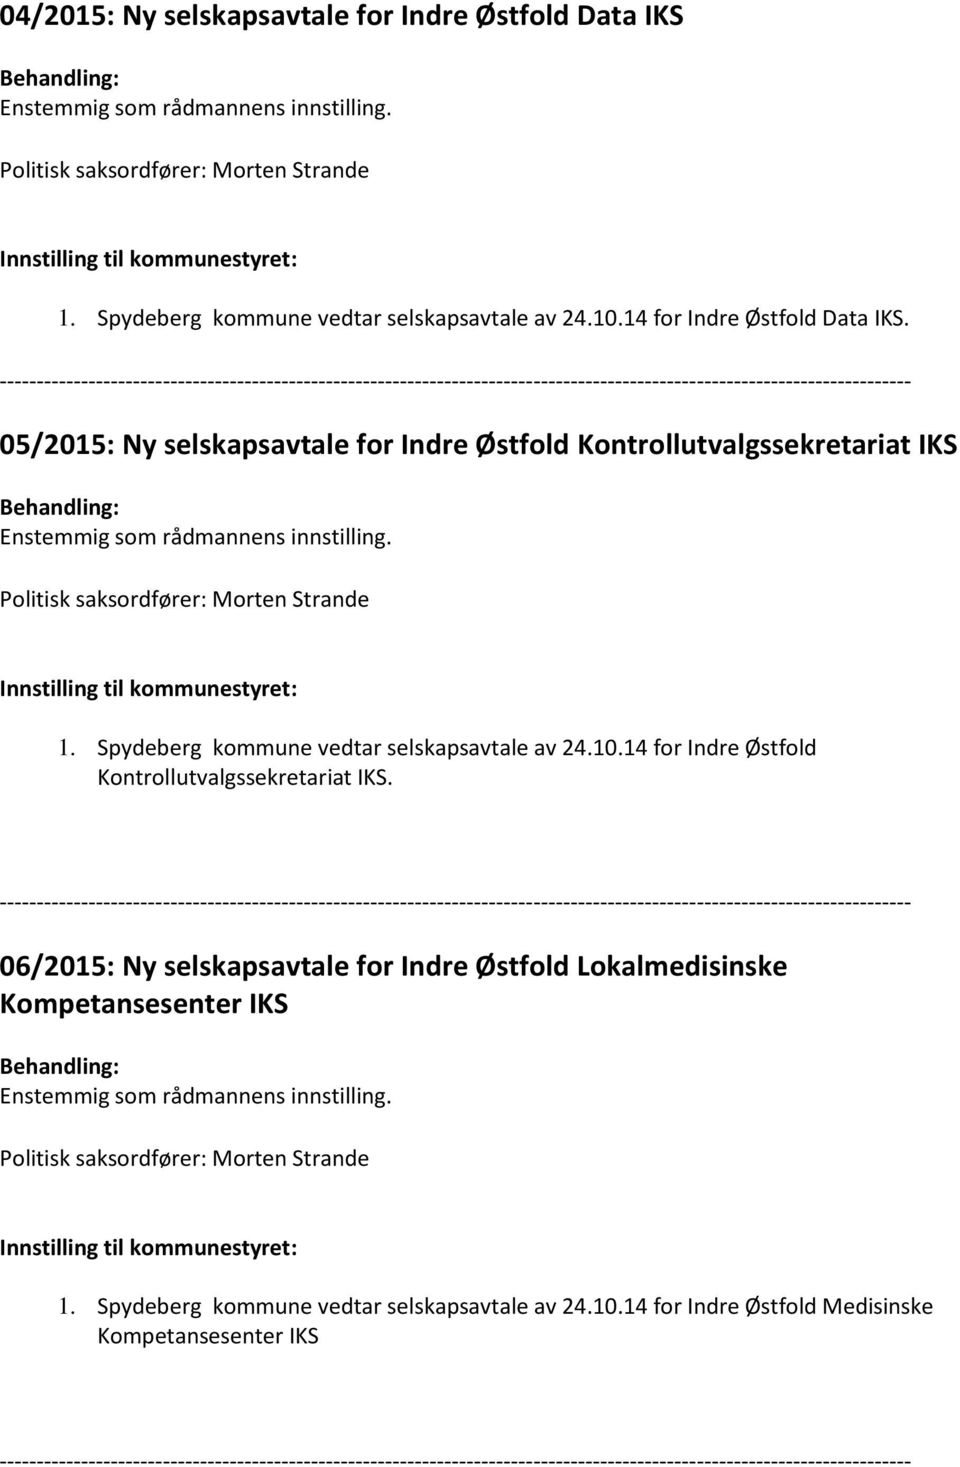 Spydeberg kommune vedtar selskapsavtale av 24.10.14 for Indre Østfold Kontrollutvalgssekretariat IKS.